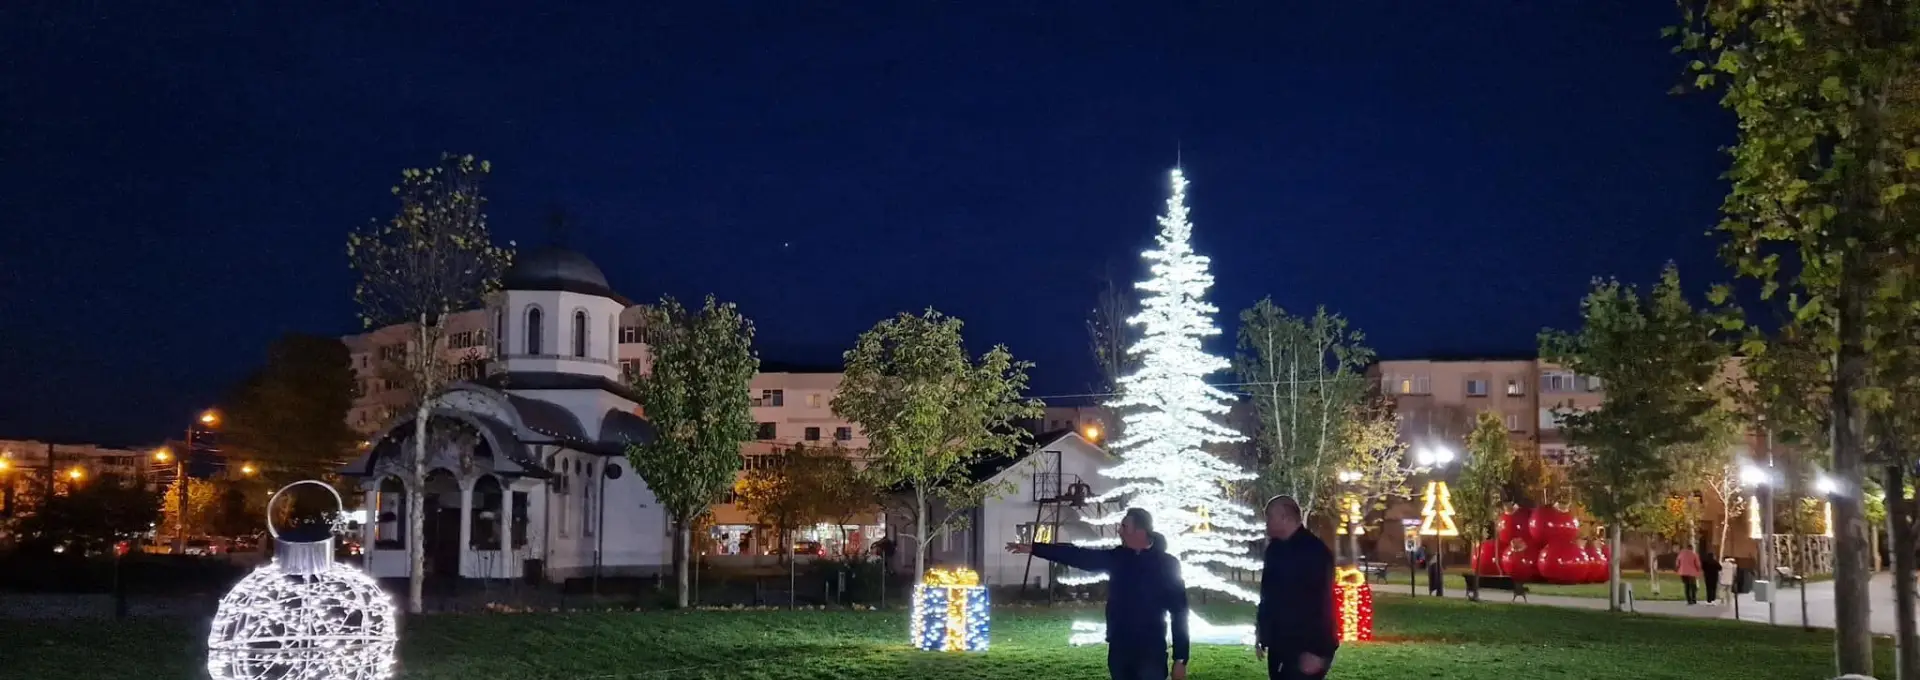 Foto Emil Moţ dă startul Sărbătorilor de Iarnă, la Slatina. Vineri seară se aprinde iluminatul festiv